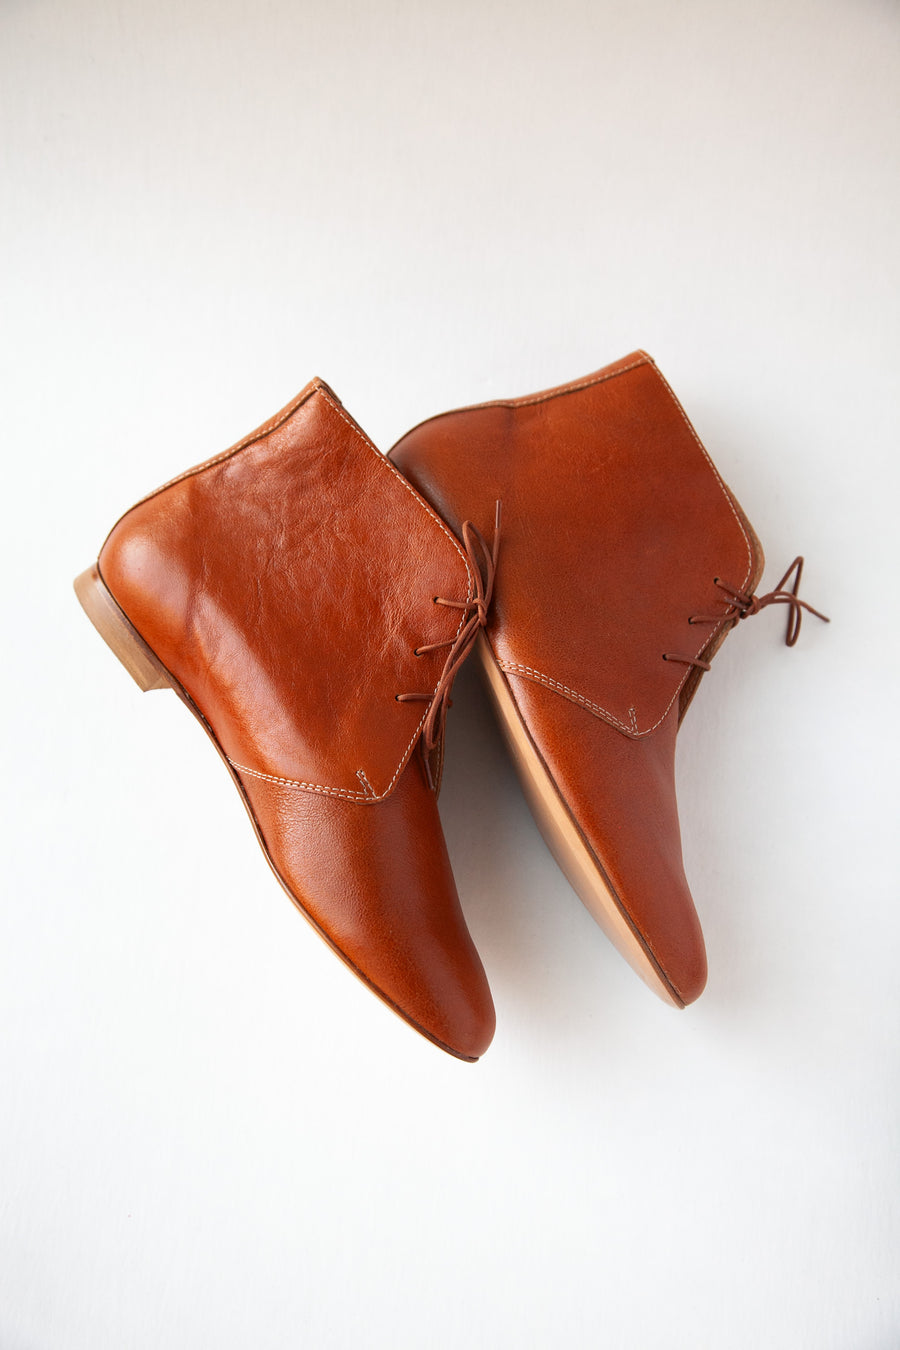 LEA Boots - Cognac Brown